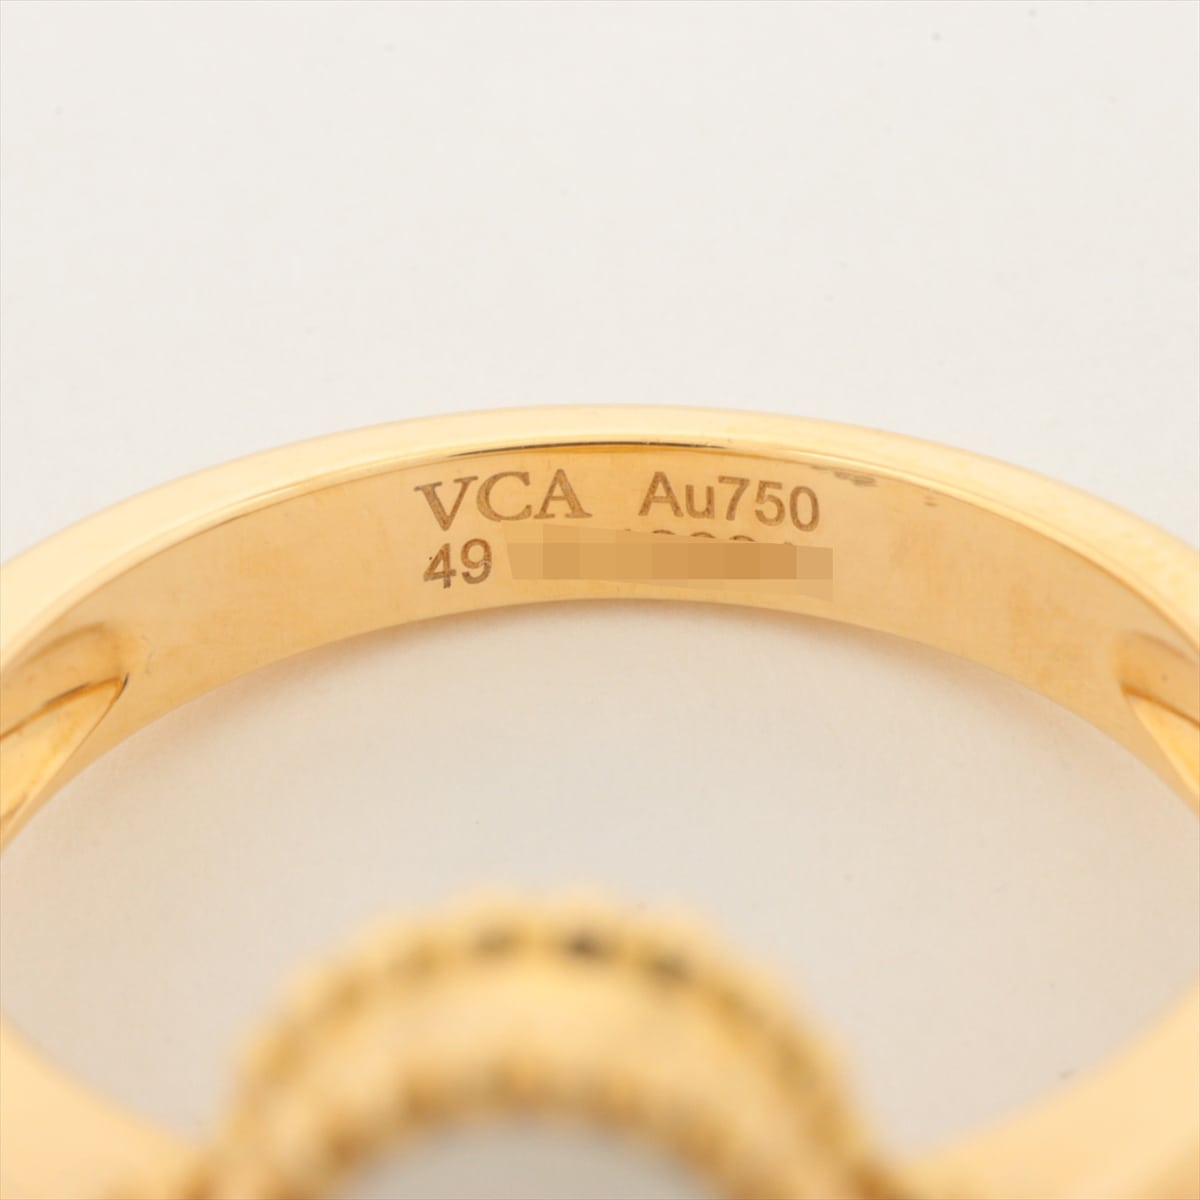 ヴァンクリーフ&アーペル ヴィンテージアルハンブラ シェル ダイヤ リング 750(YG) 6.9g 49